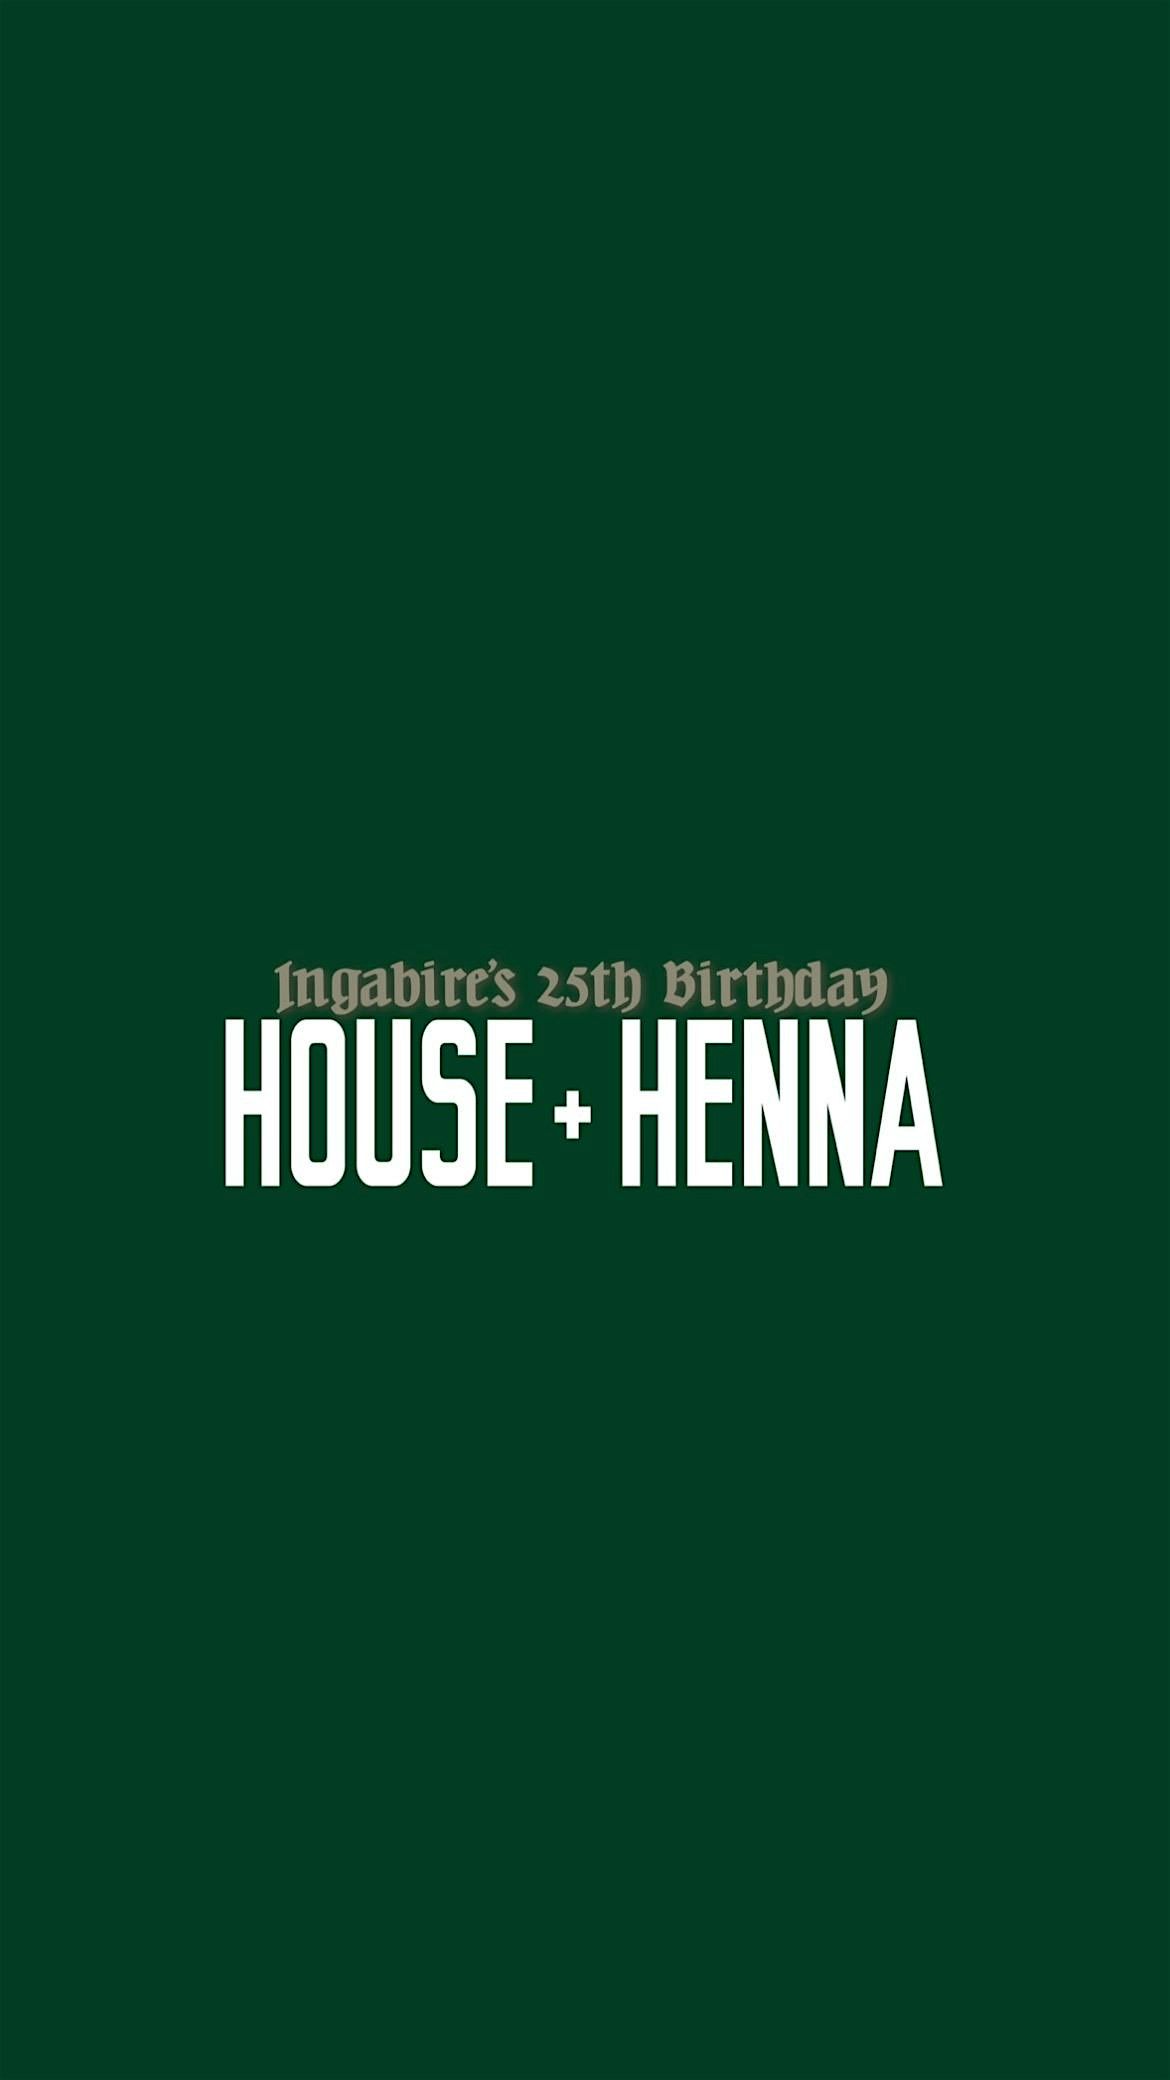 HOUSE + HENNA